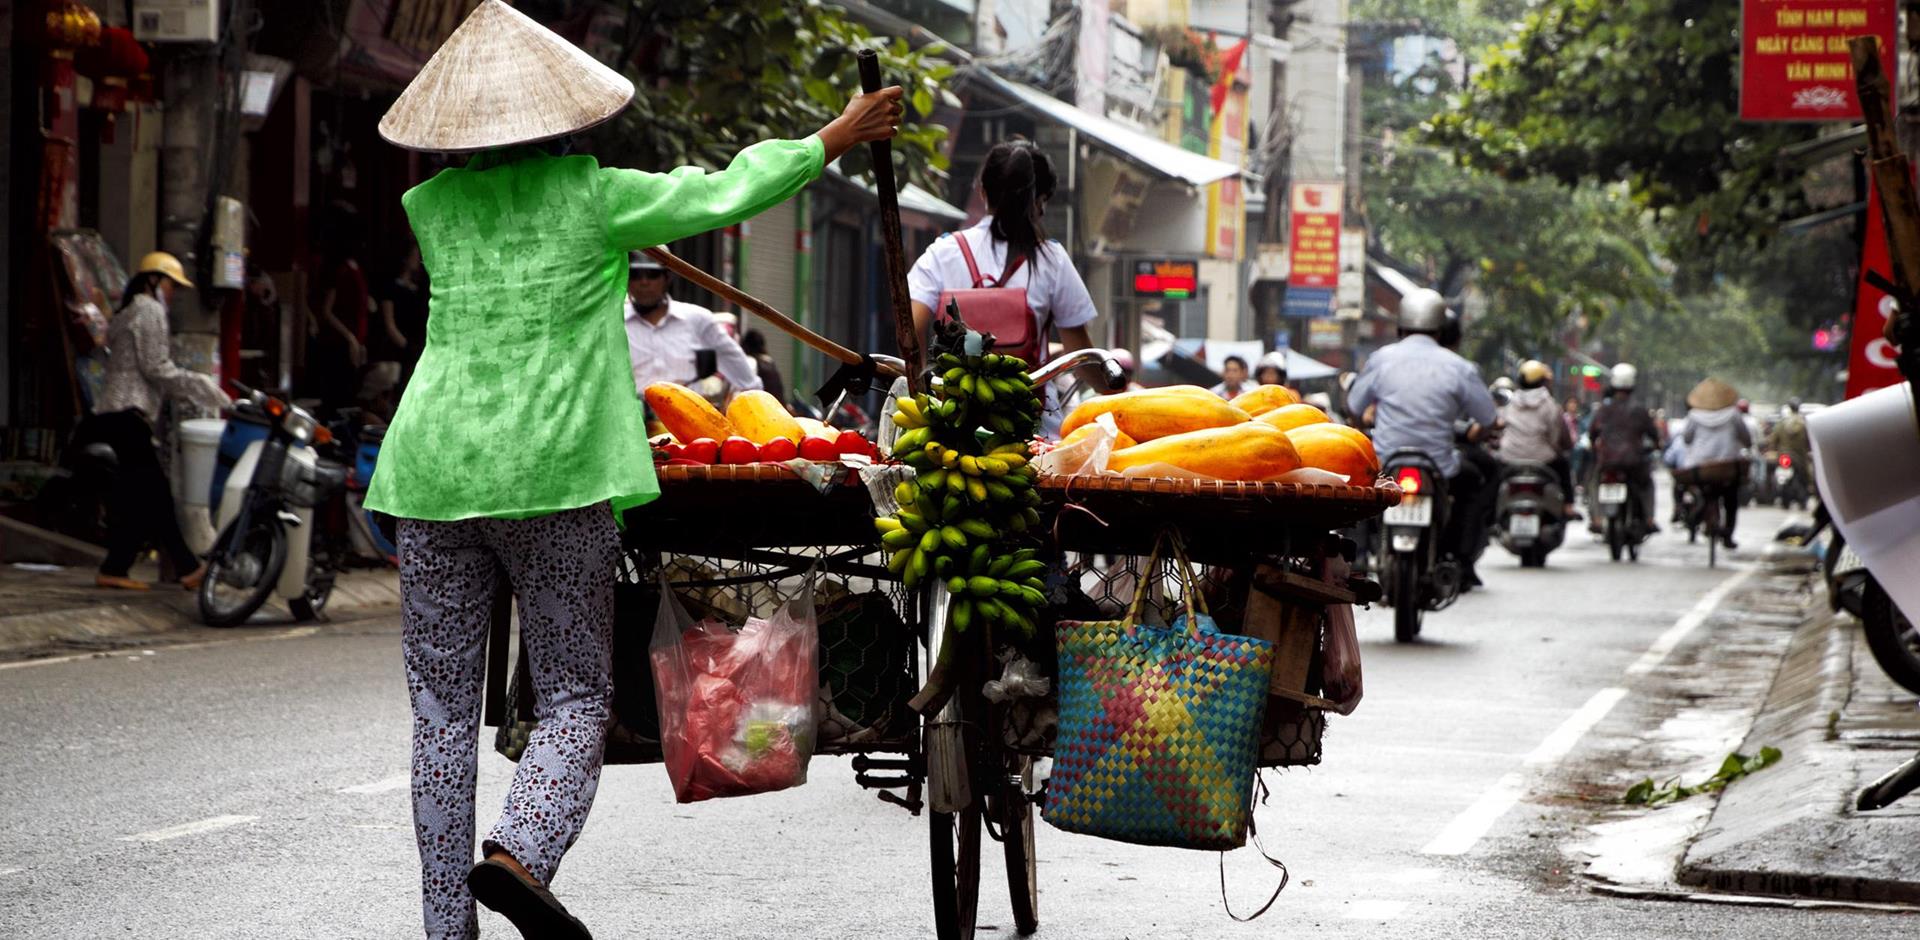 Street vendor, Vietnam